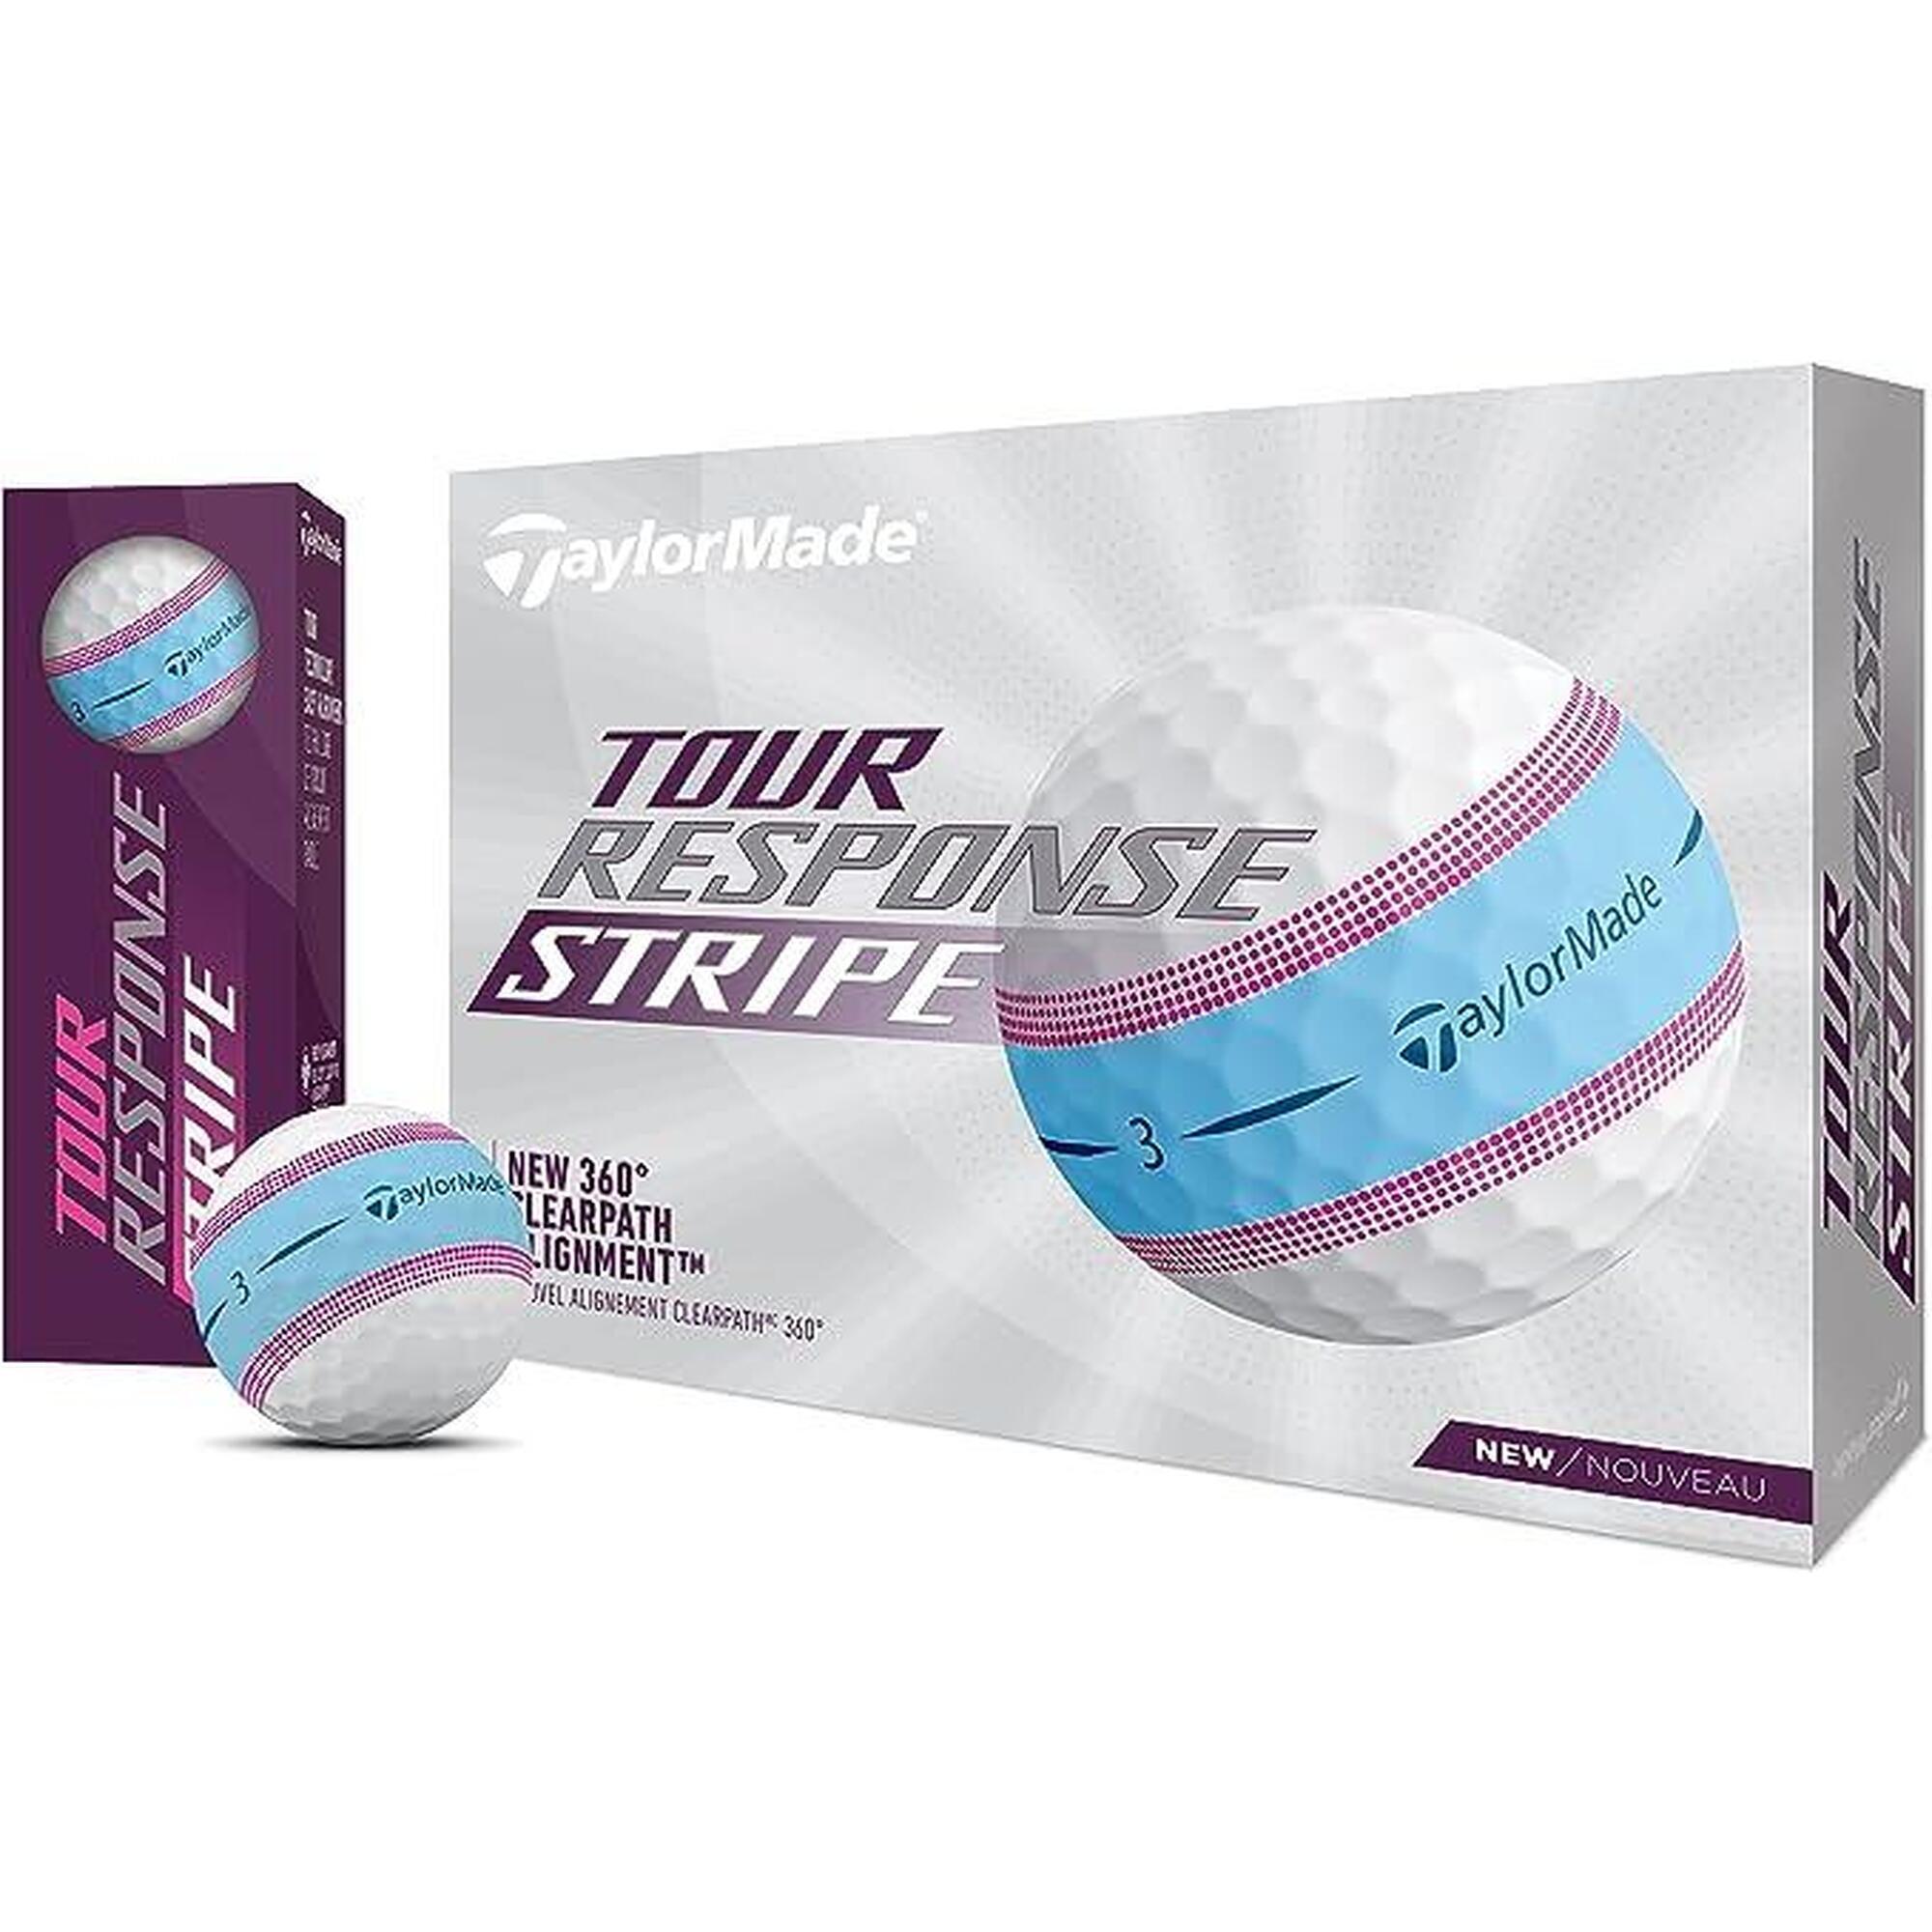 TOUR RESPONSE STRIPE 三層高爾夫球(12粒裝) - 藍色/粉色